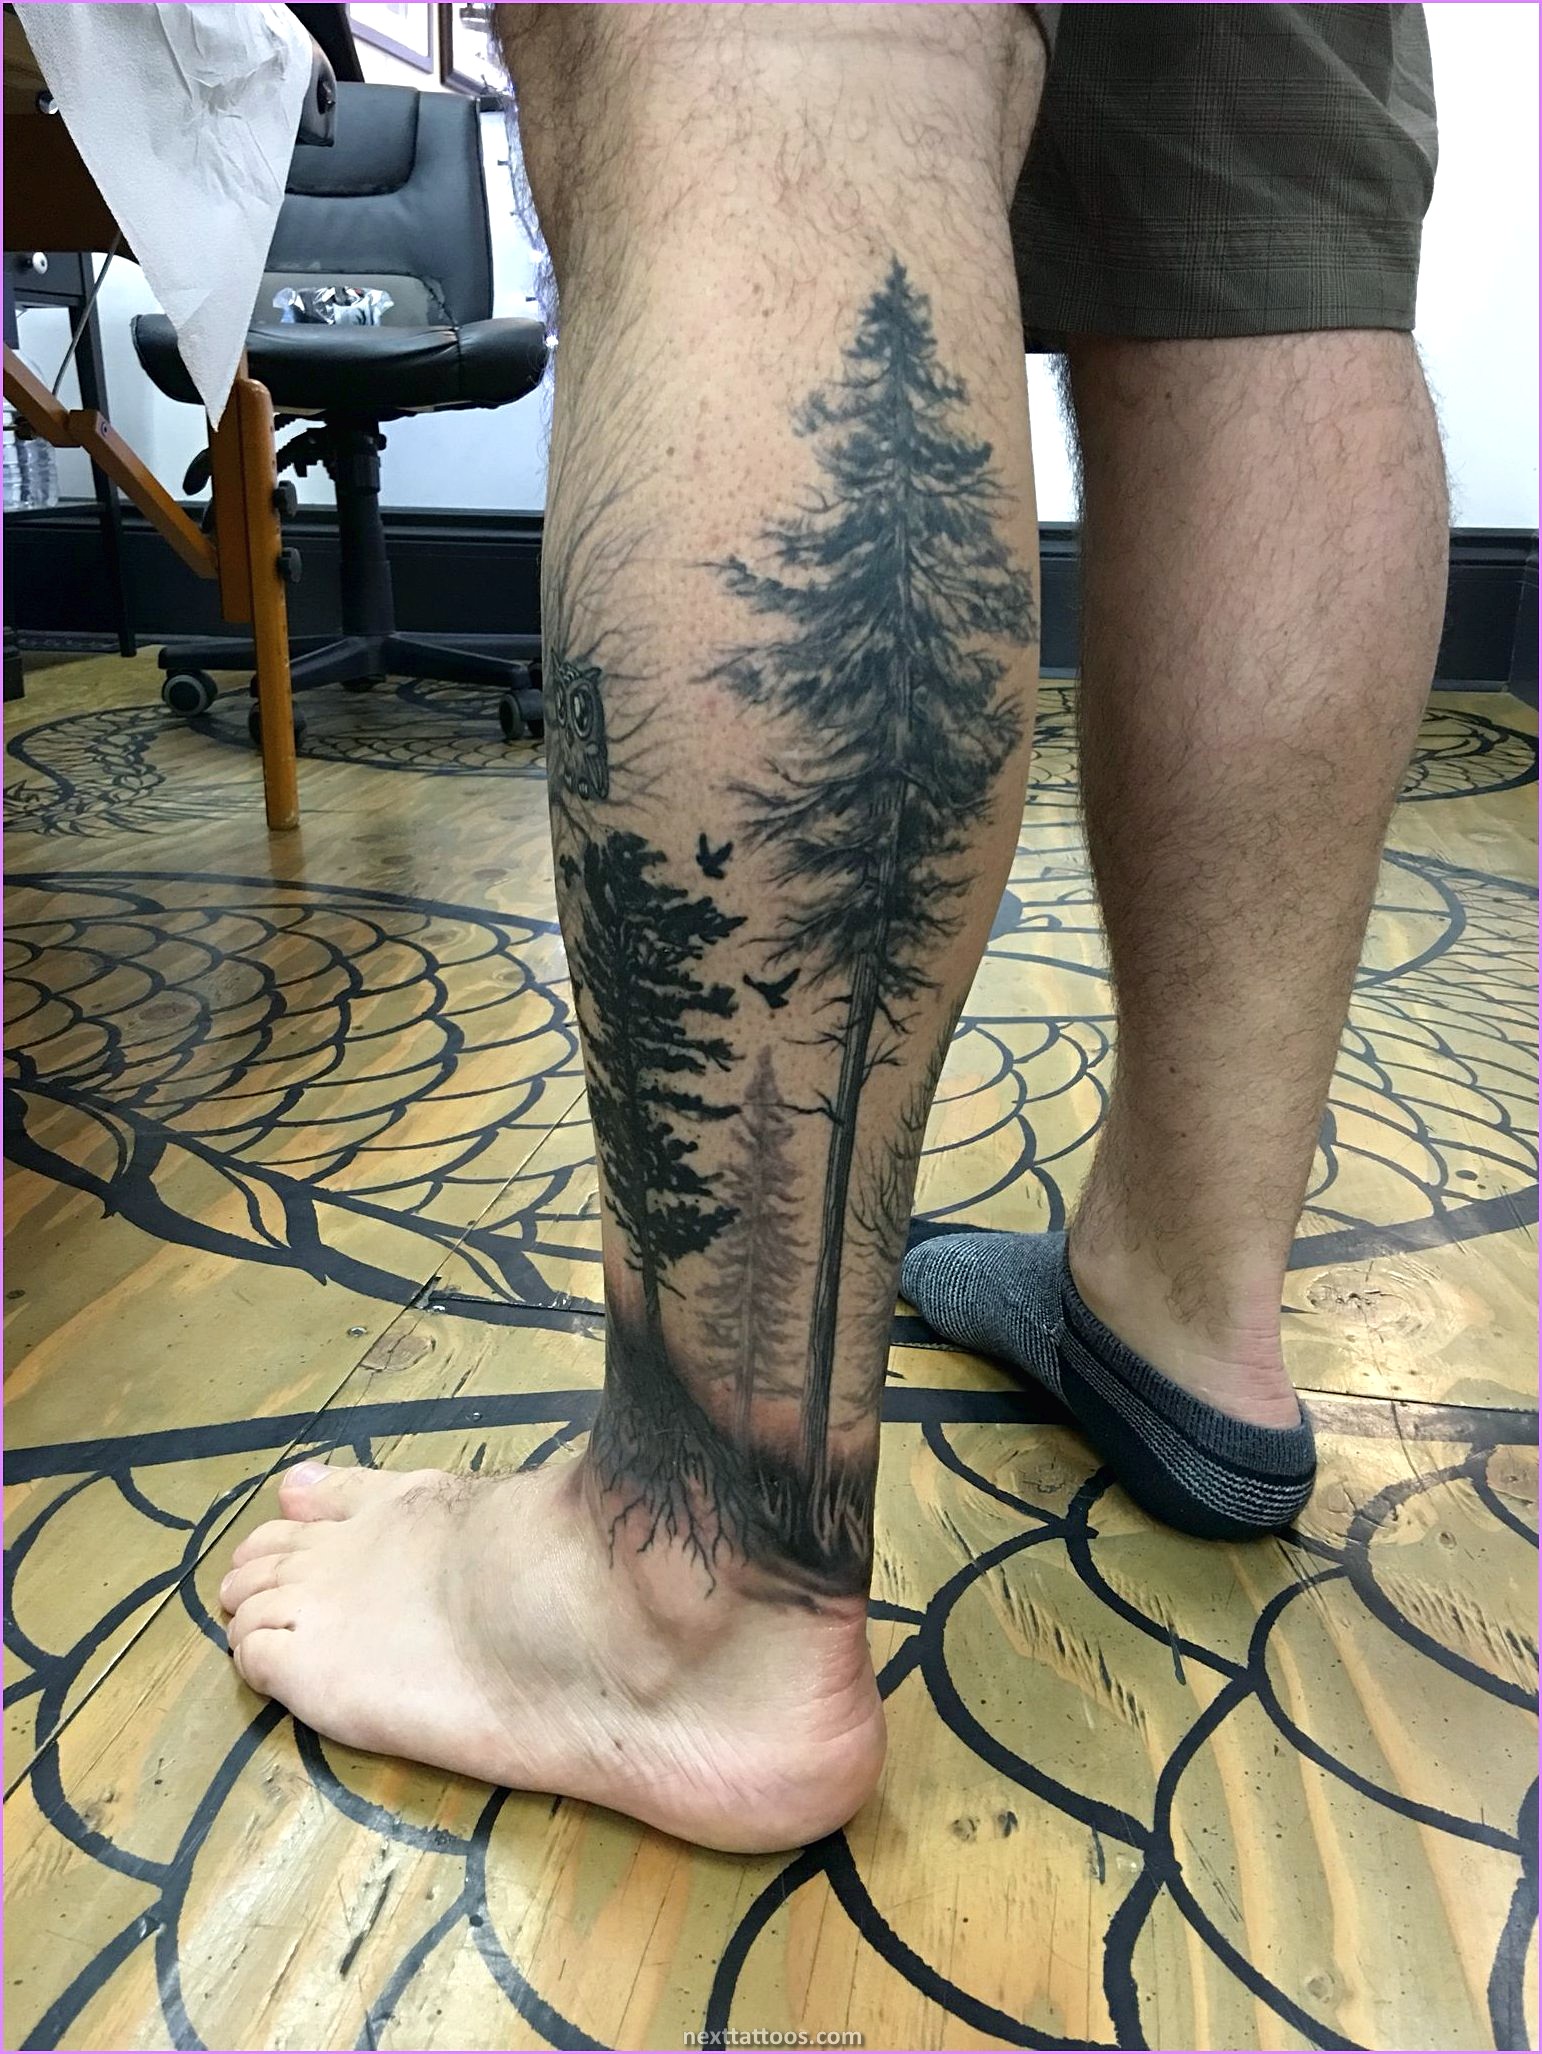 Dark Nature Tattoos